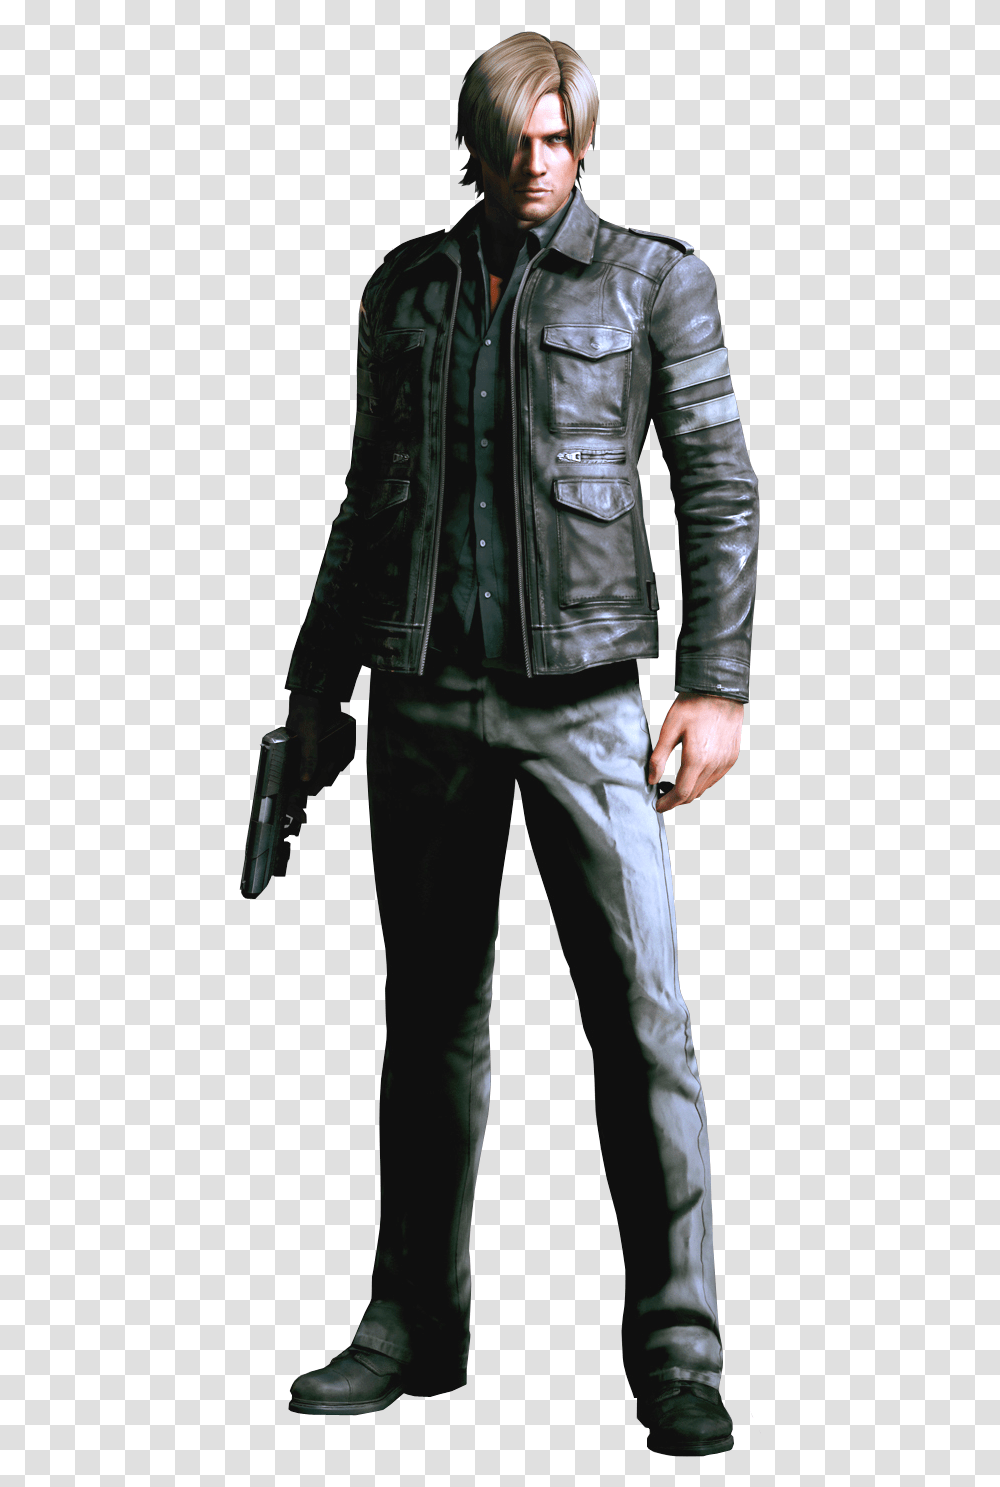 Leon Kennedy Resident Evil 6 Jacket, Apparel, Coat, Leather Jacket Transparent Png